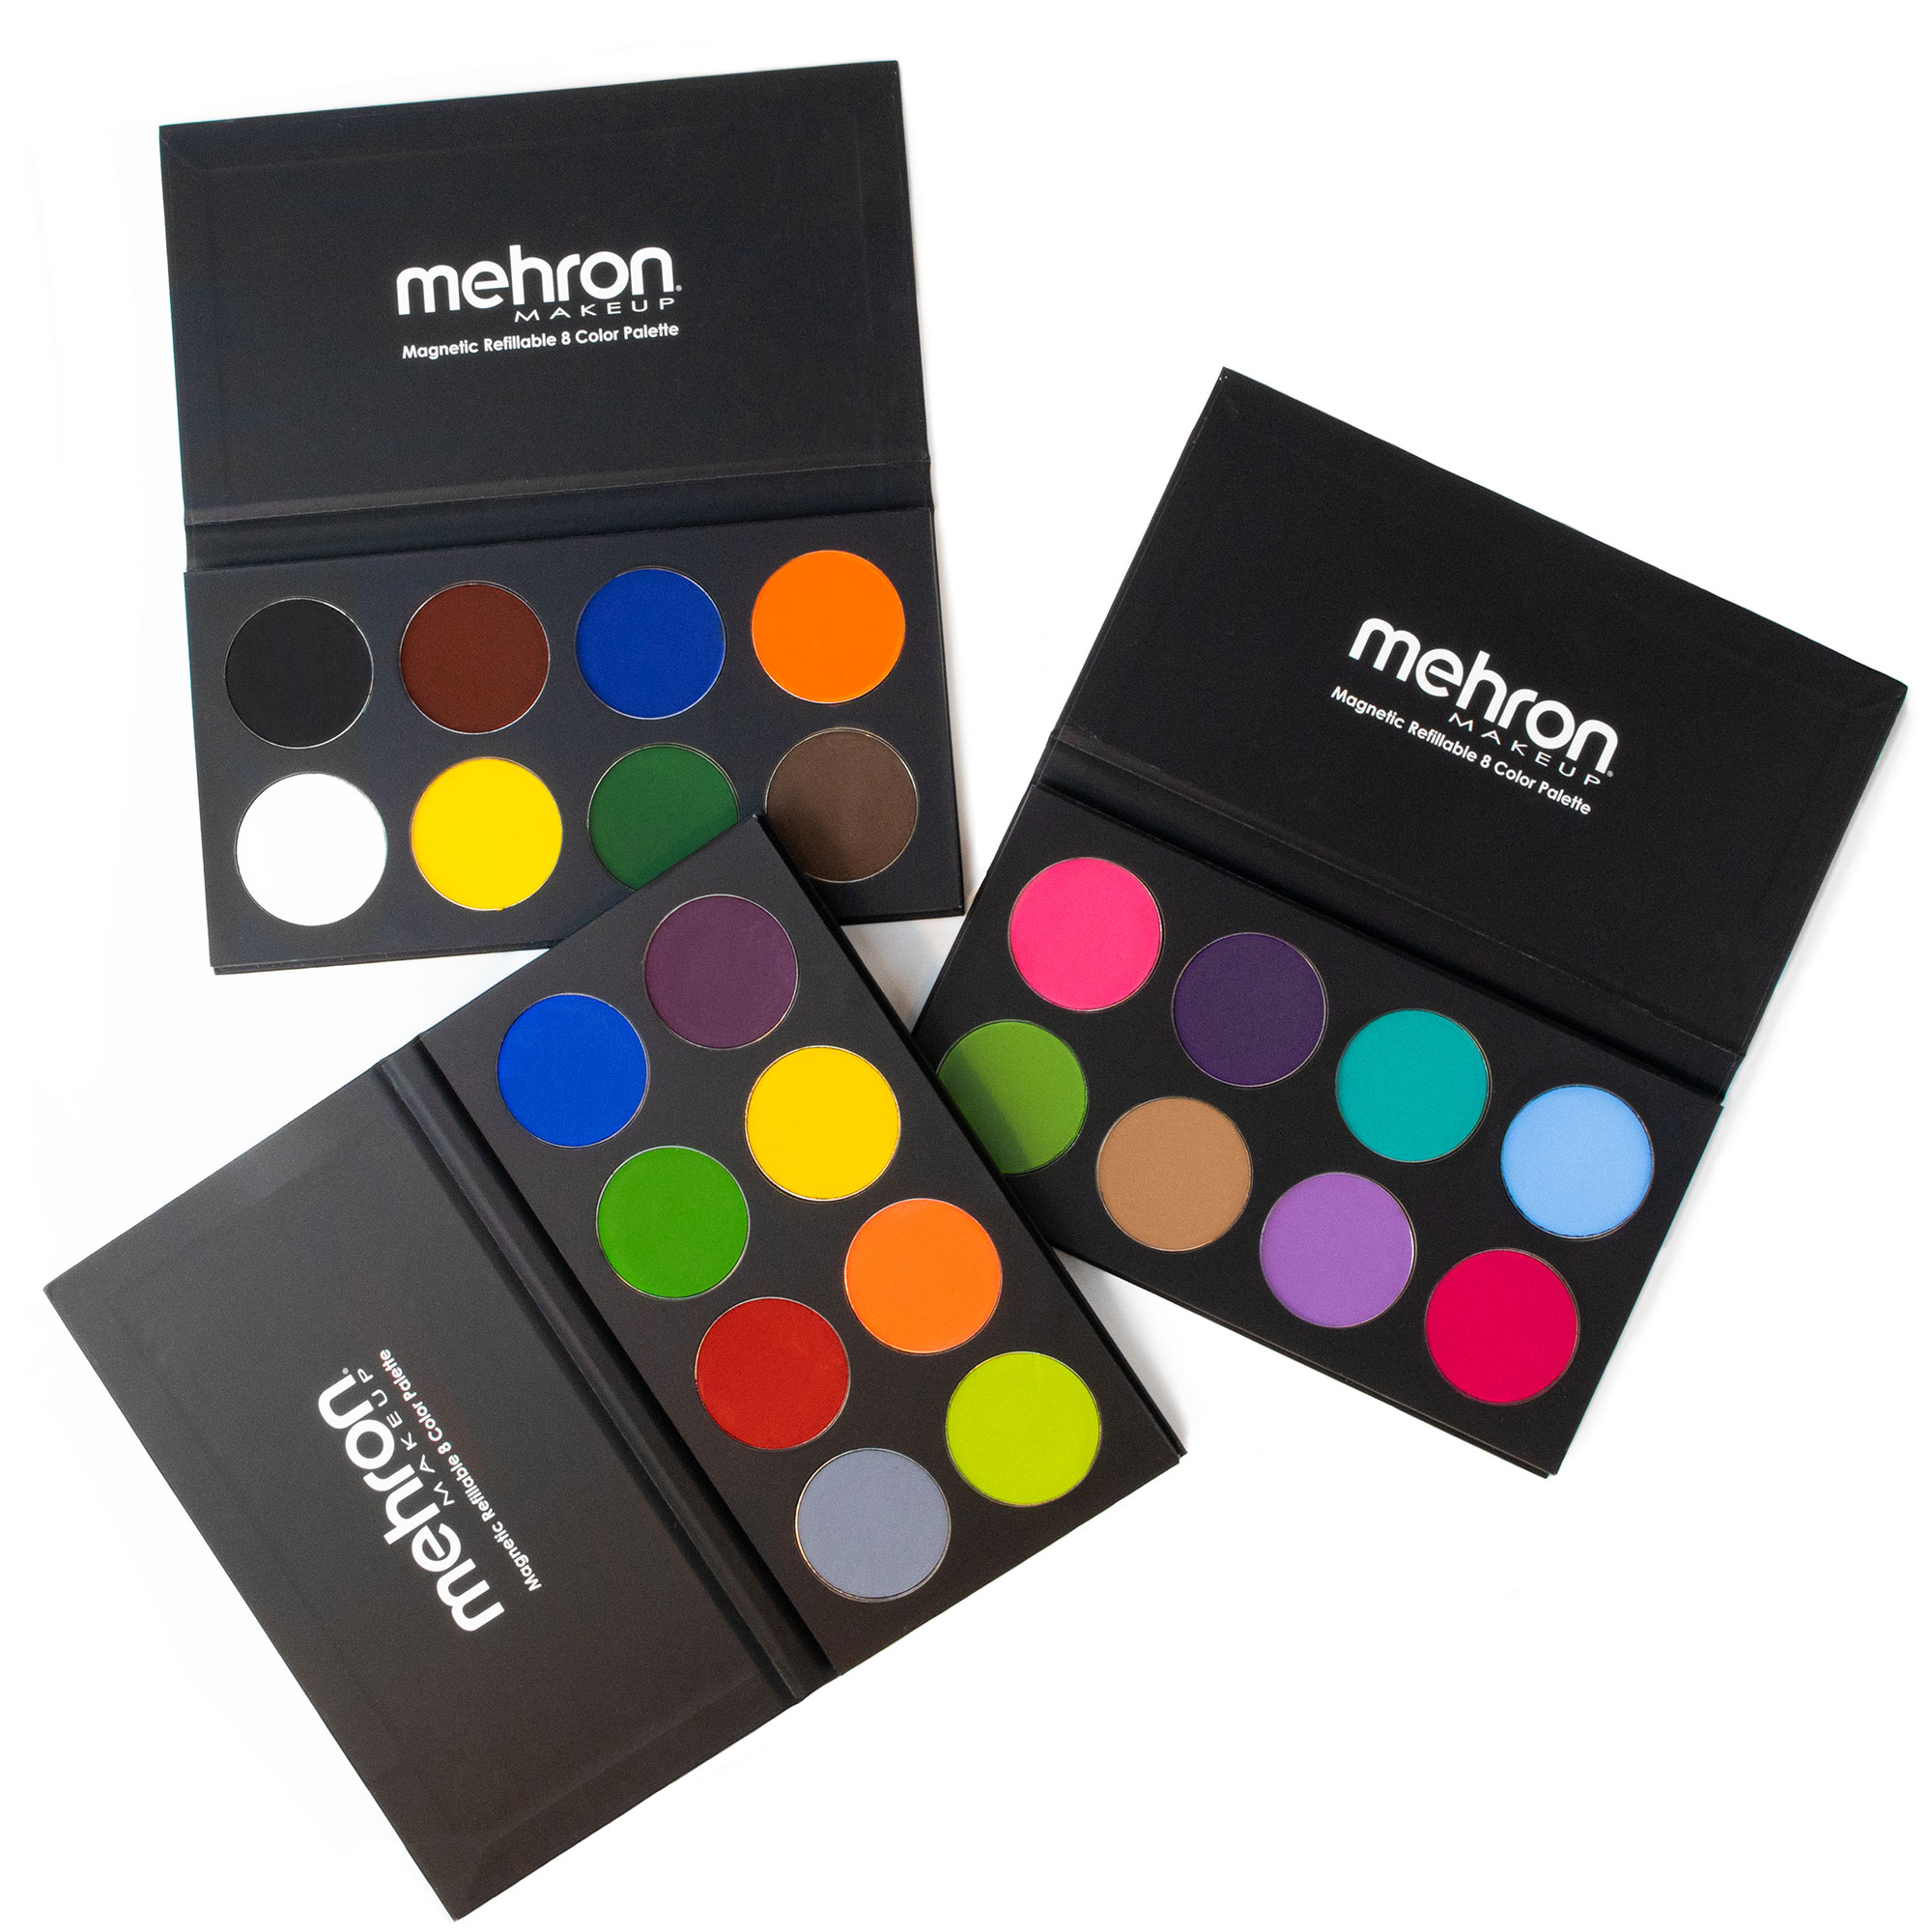 Mehron Makeup Paradise Makeup AQ Face & Body Paint 1.4 oz Storm Cloud